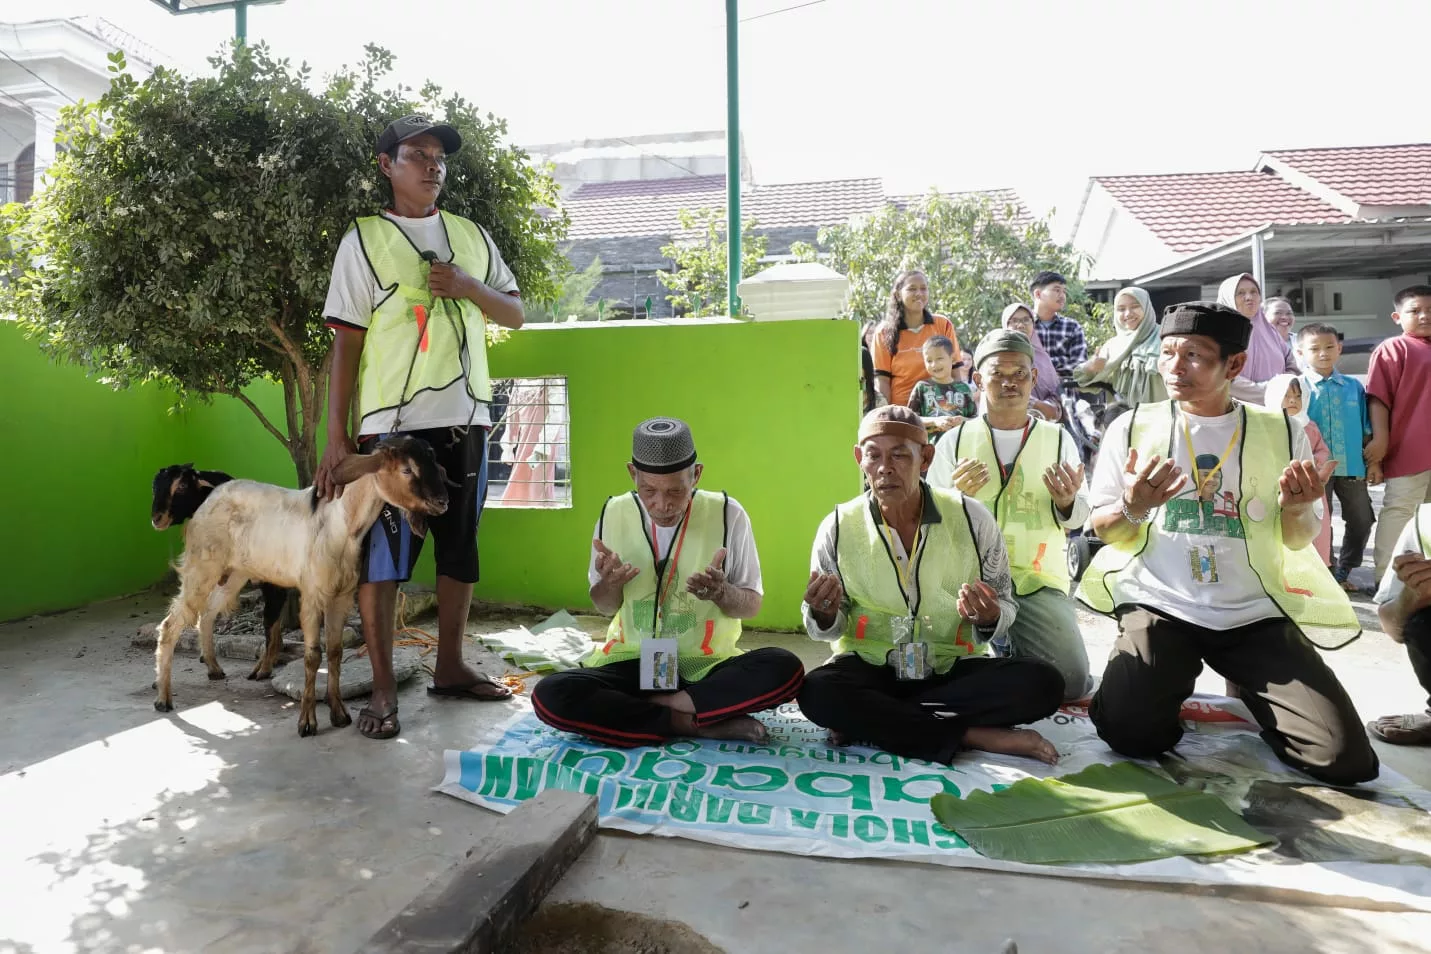 Wong Kito Ganjar berikan Hewan Kurban di 3 Titik Kota Palembang, sebuah kegiatan yang dilakukan oleh sukarelawan Wong Kito Dewe untuk mendukung Ganjar Pranowo dalam menyambut momen Iduladha. Para simpatisan Ganjar menyediakan sembilan ekor kambing yang akan didistribusikan ke tiga lokasi di Kota Palembang.